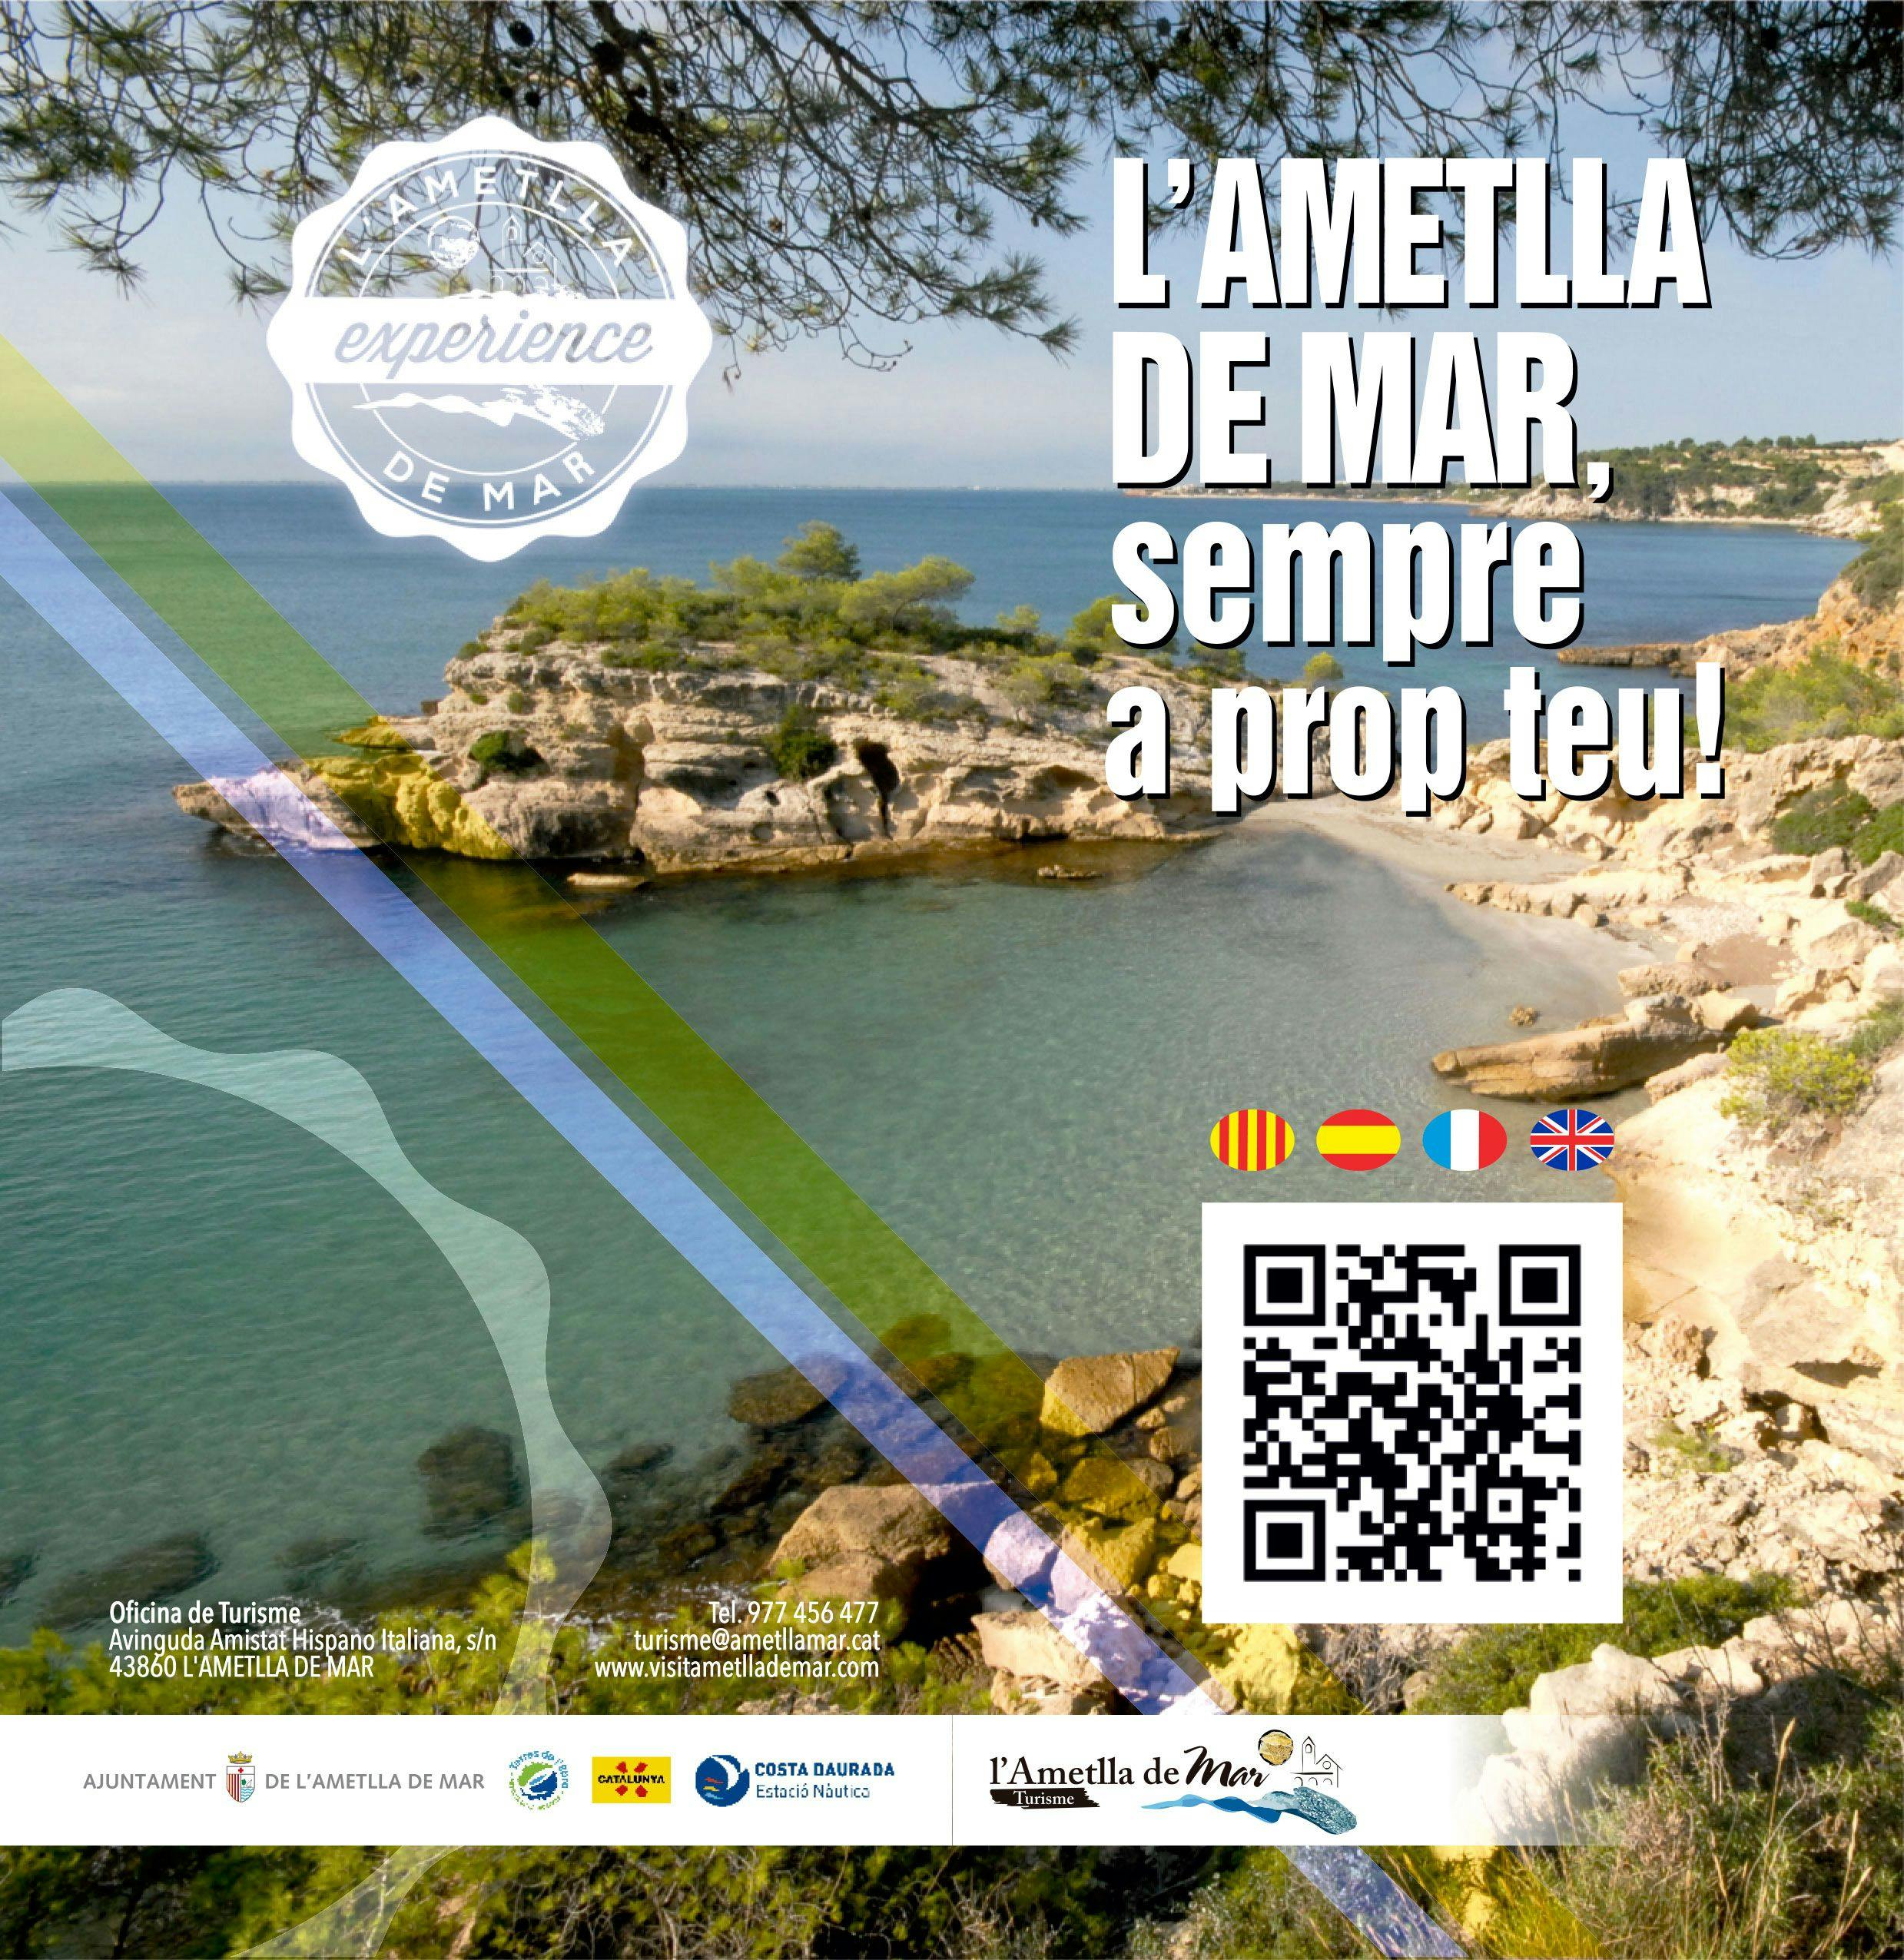 L'Ametlla de Mar, always close to you!